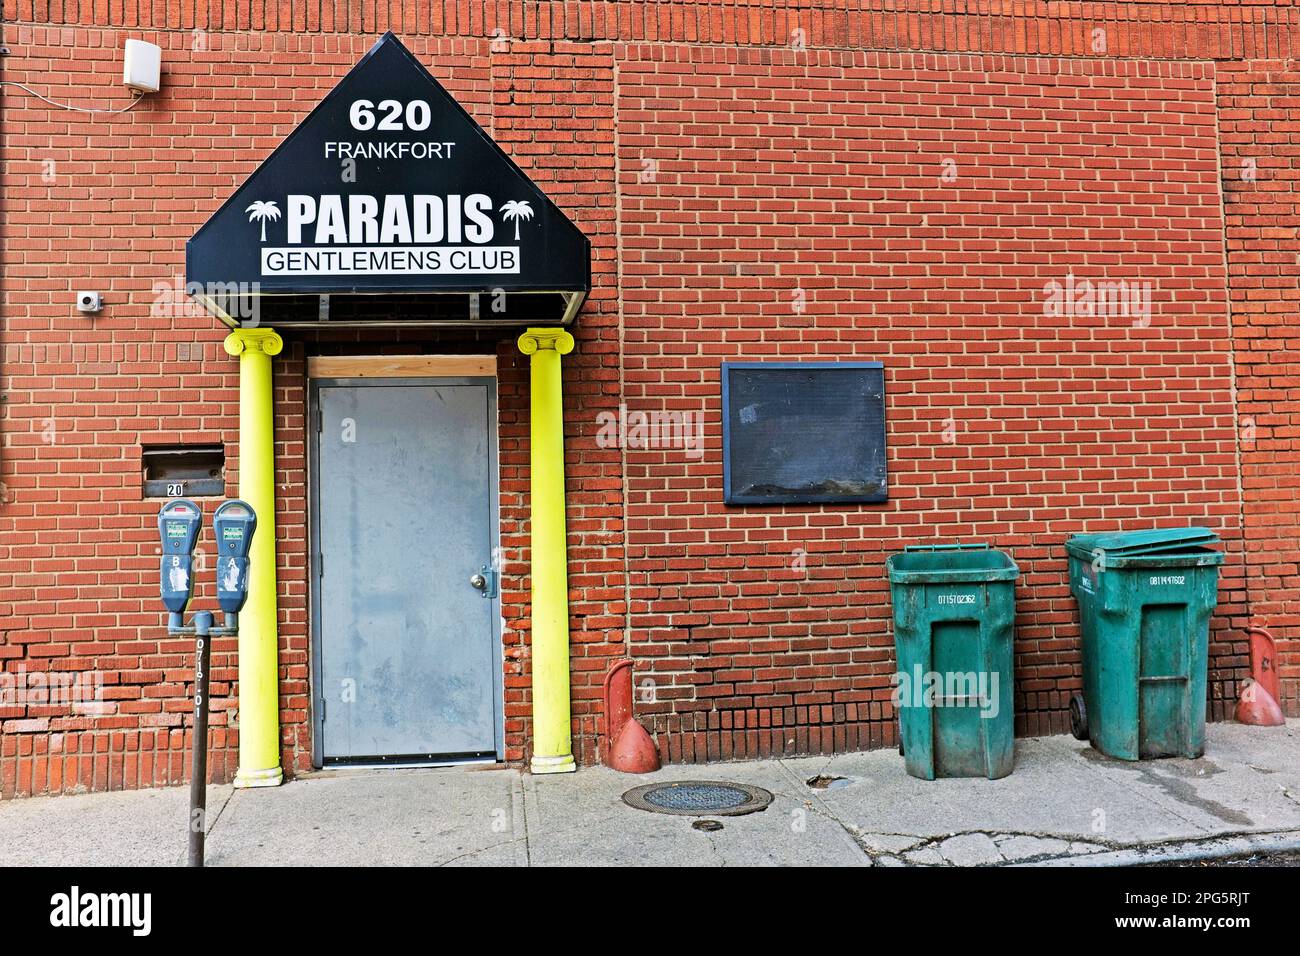 Le Paradis Gentlemen's Club est un lieu de divertissement pour adultes situé sur l'avenue Frankfort, dans le quartier des entrepôts, au centre-ville de Cleveland, Ohio, États-Unis. Banque D'Images